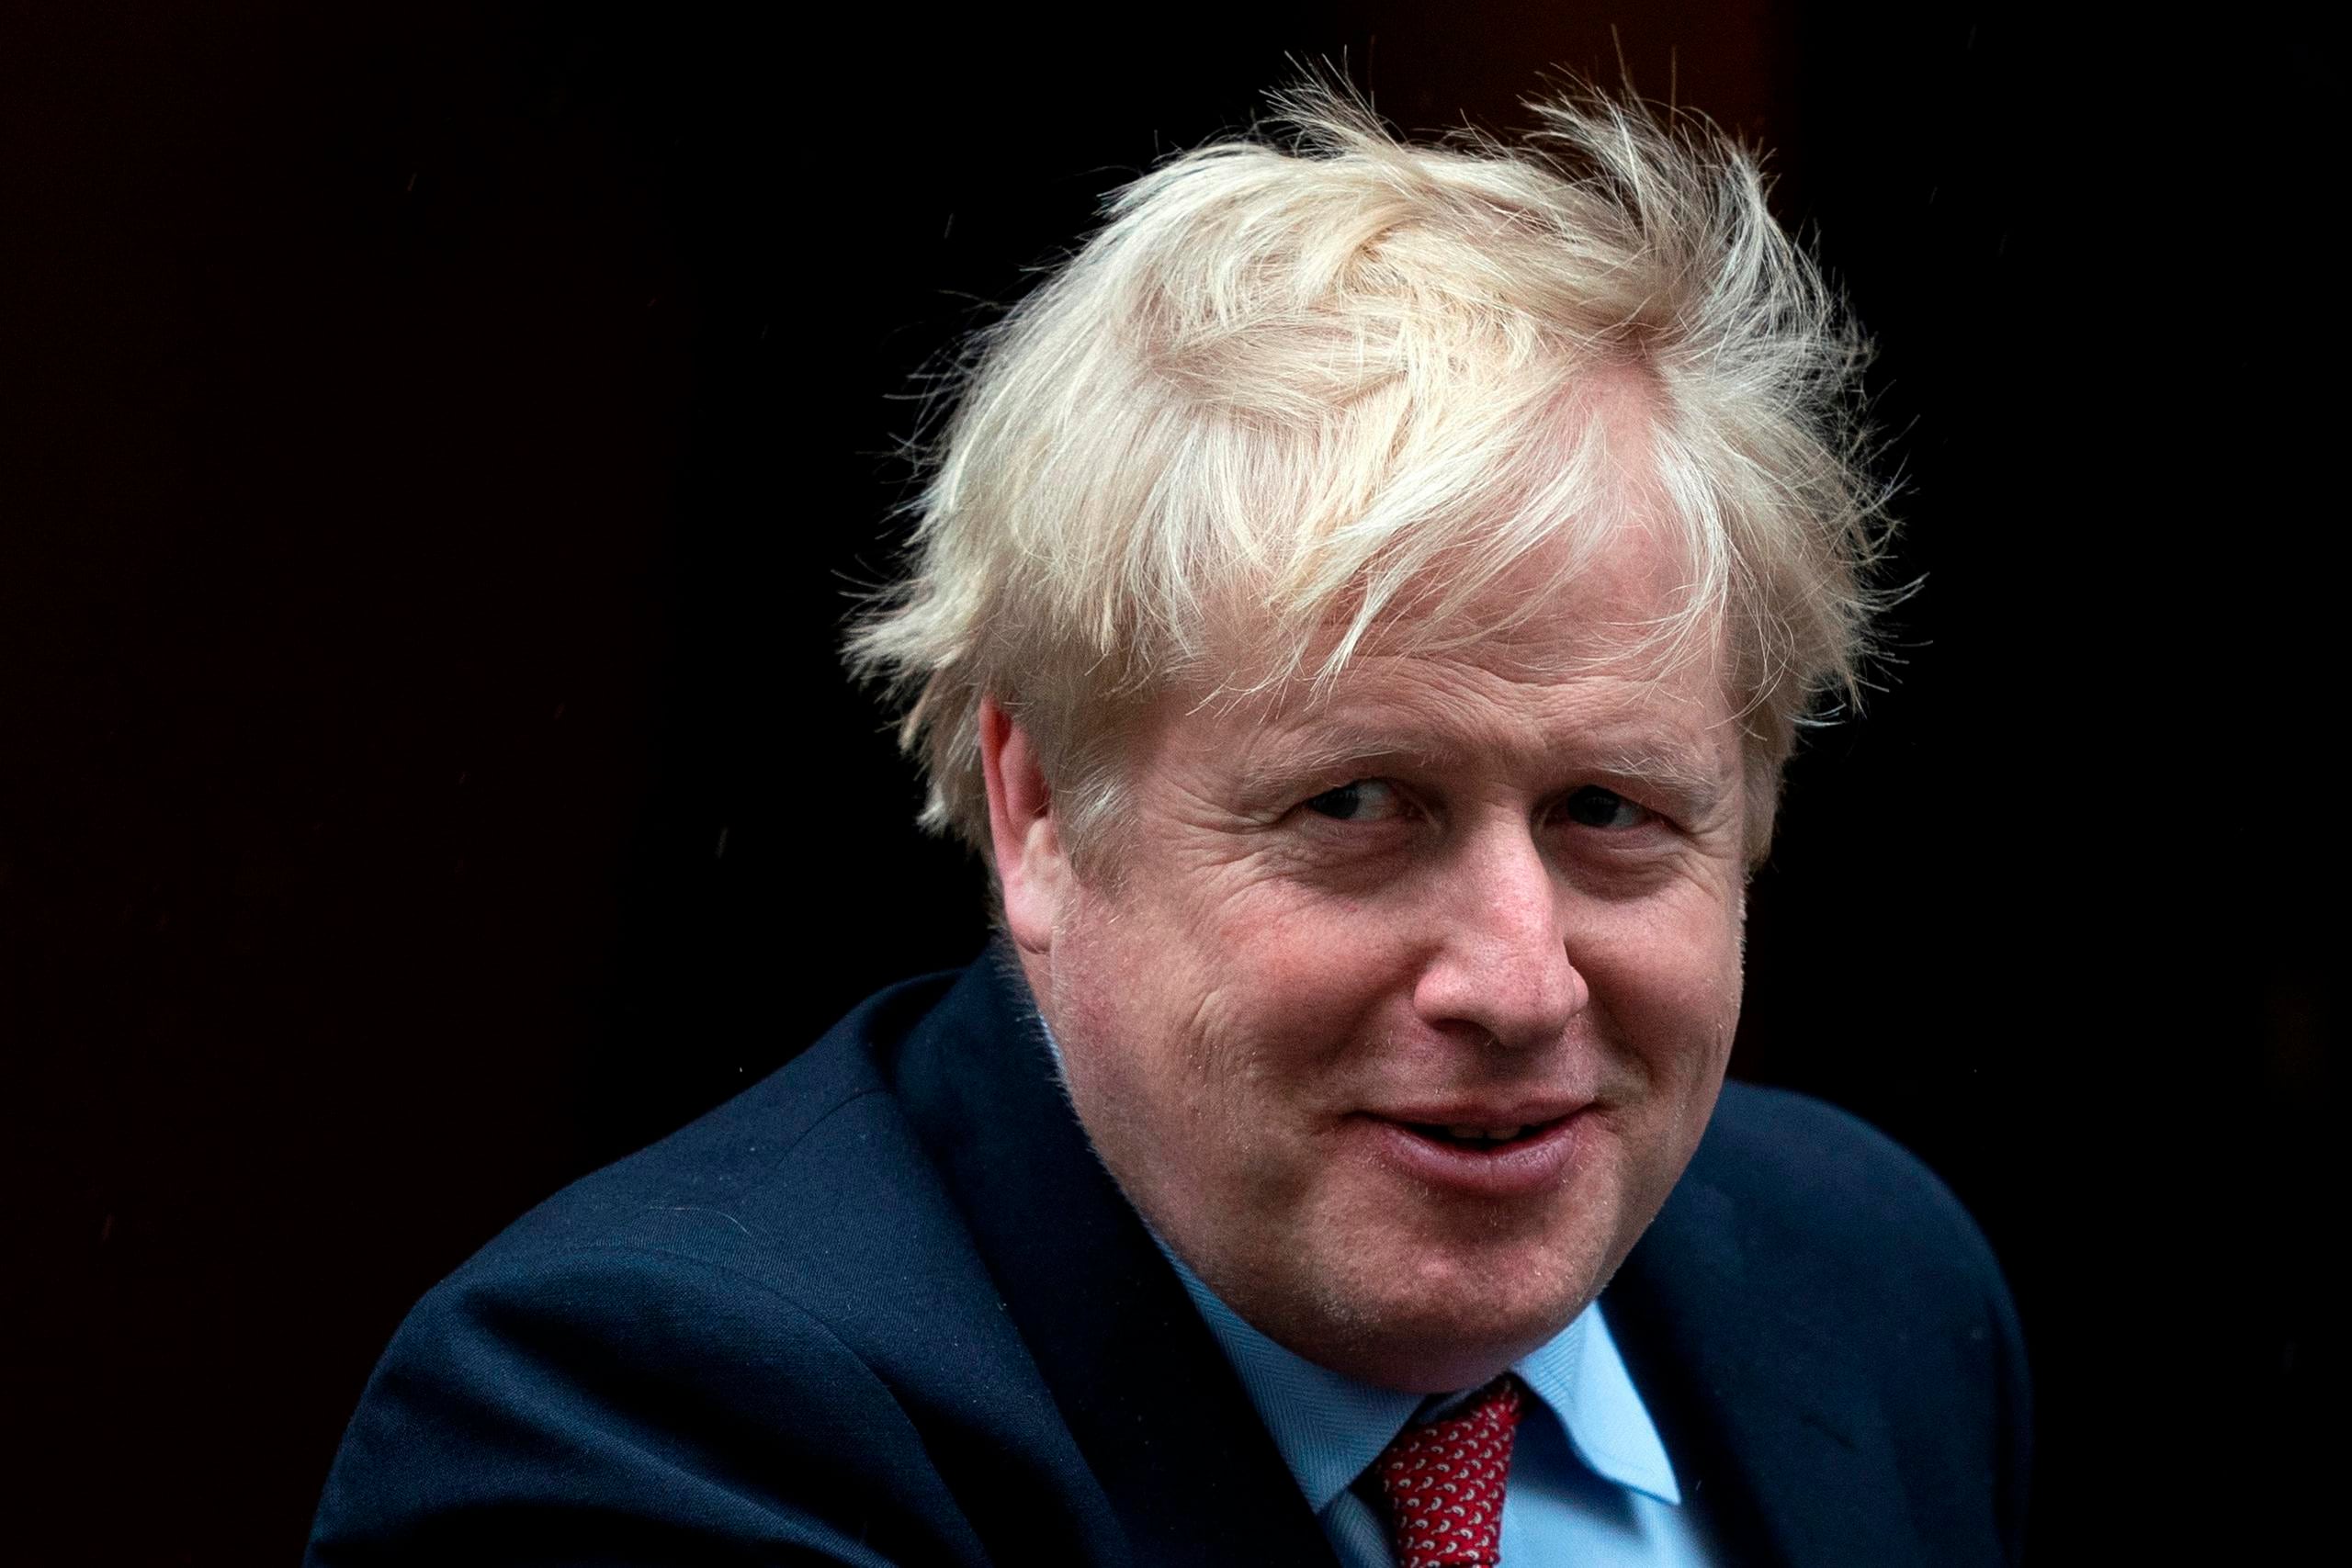 El primer ministro  de Gran Bretaña, Boris Johnson, "necesitará tiempo" para reanudar sus tareas como jefe de estado, dijo el padre del funcionario.